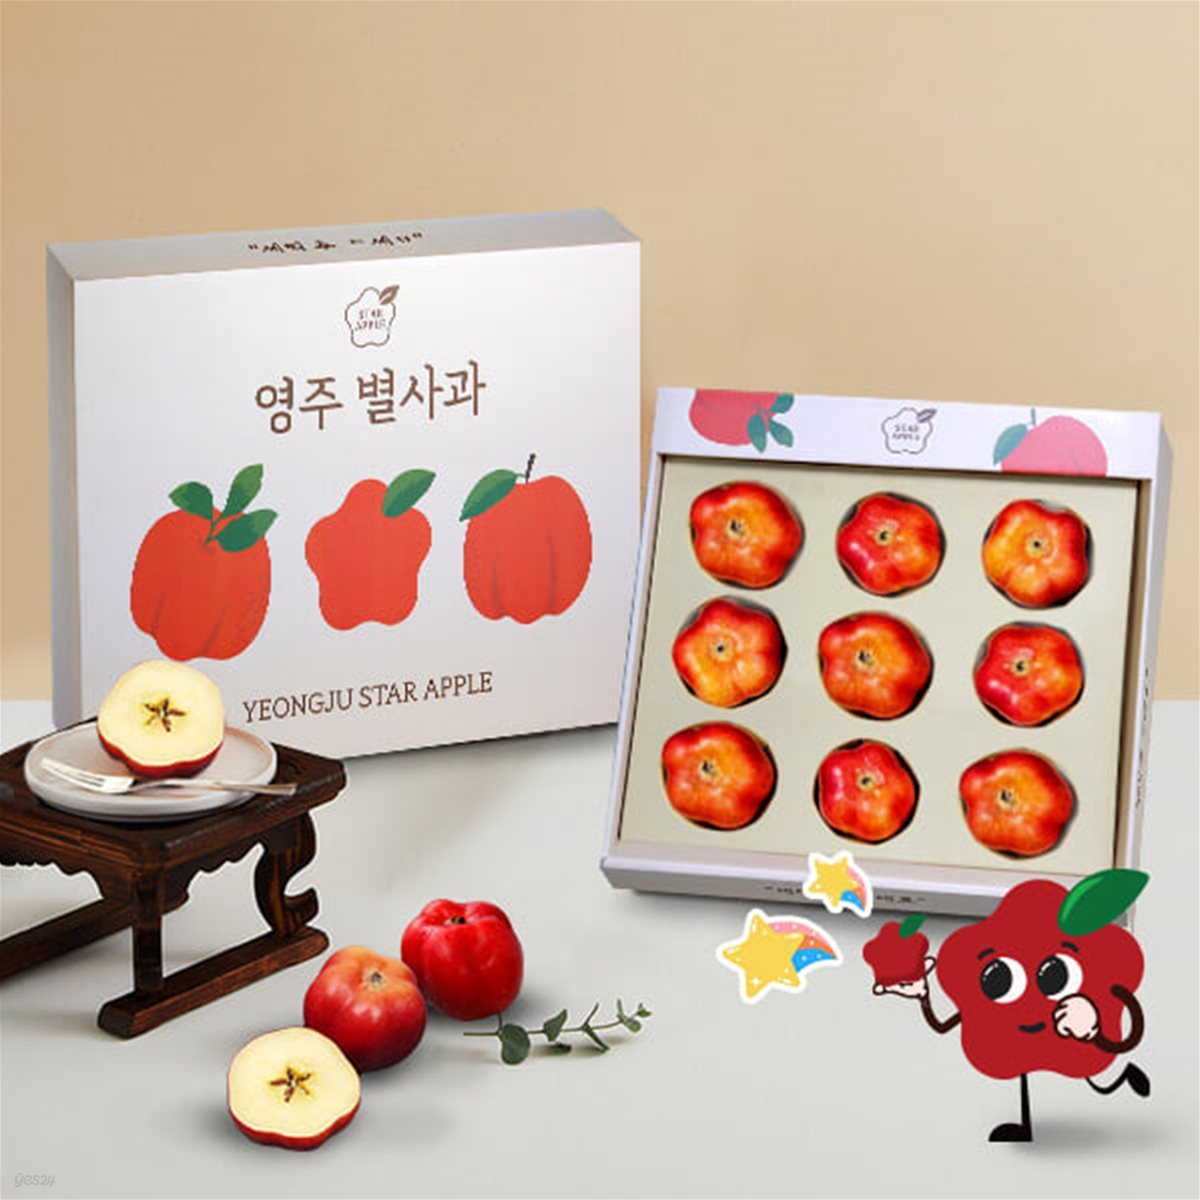 [가을향기] 깜찍한 달콤함 영주 별사과 1kg/9과